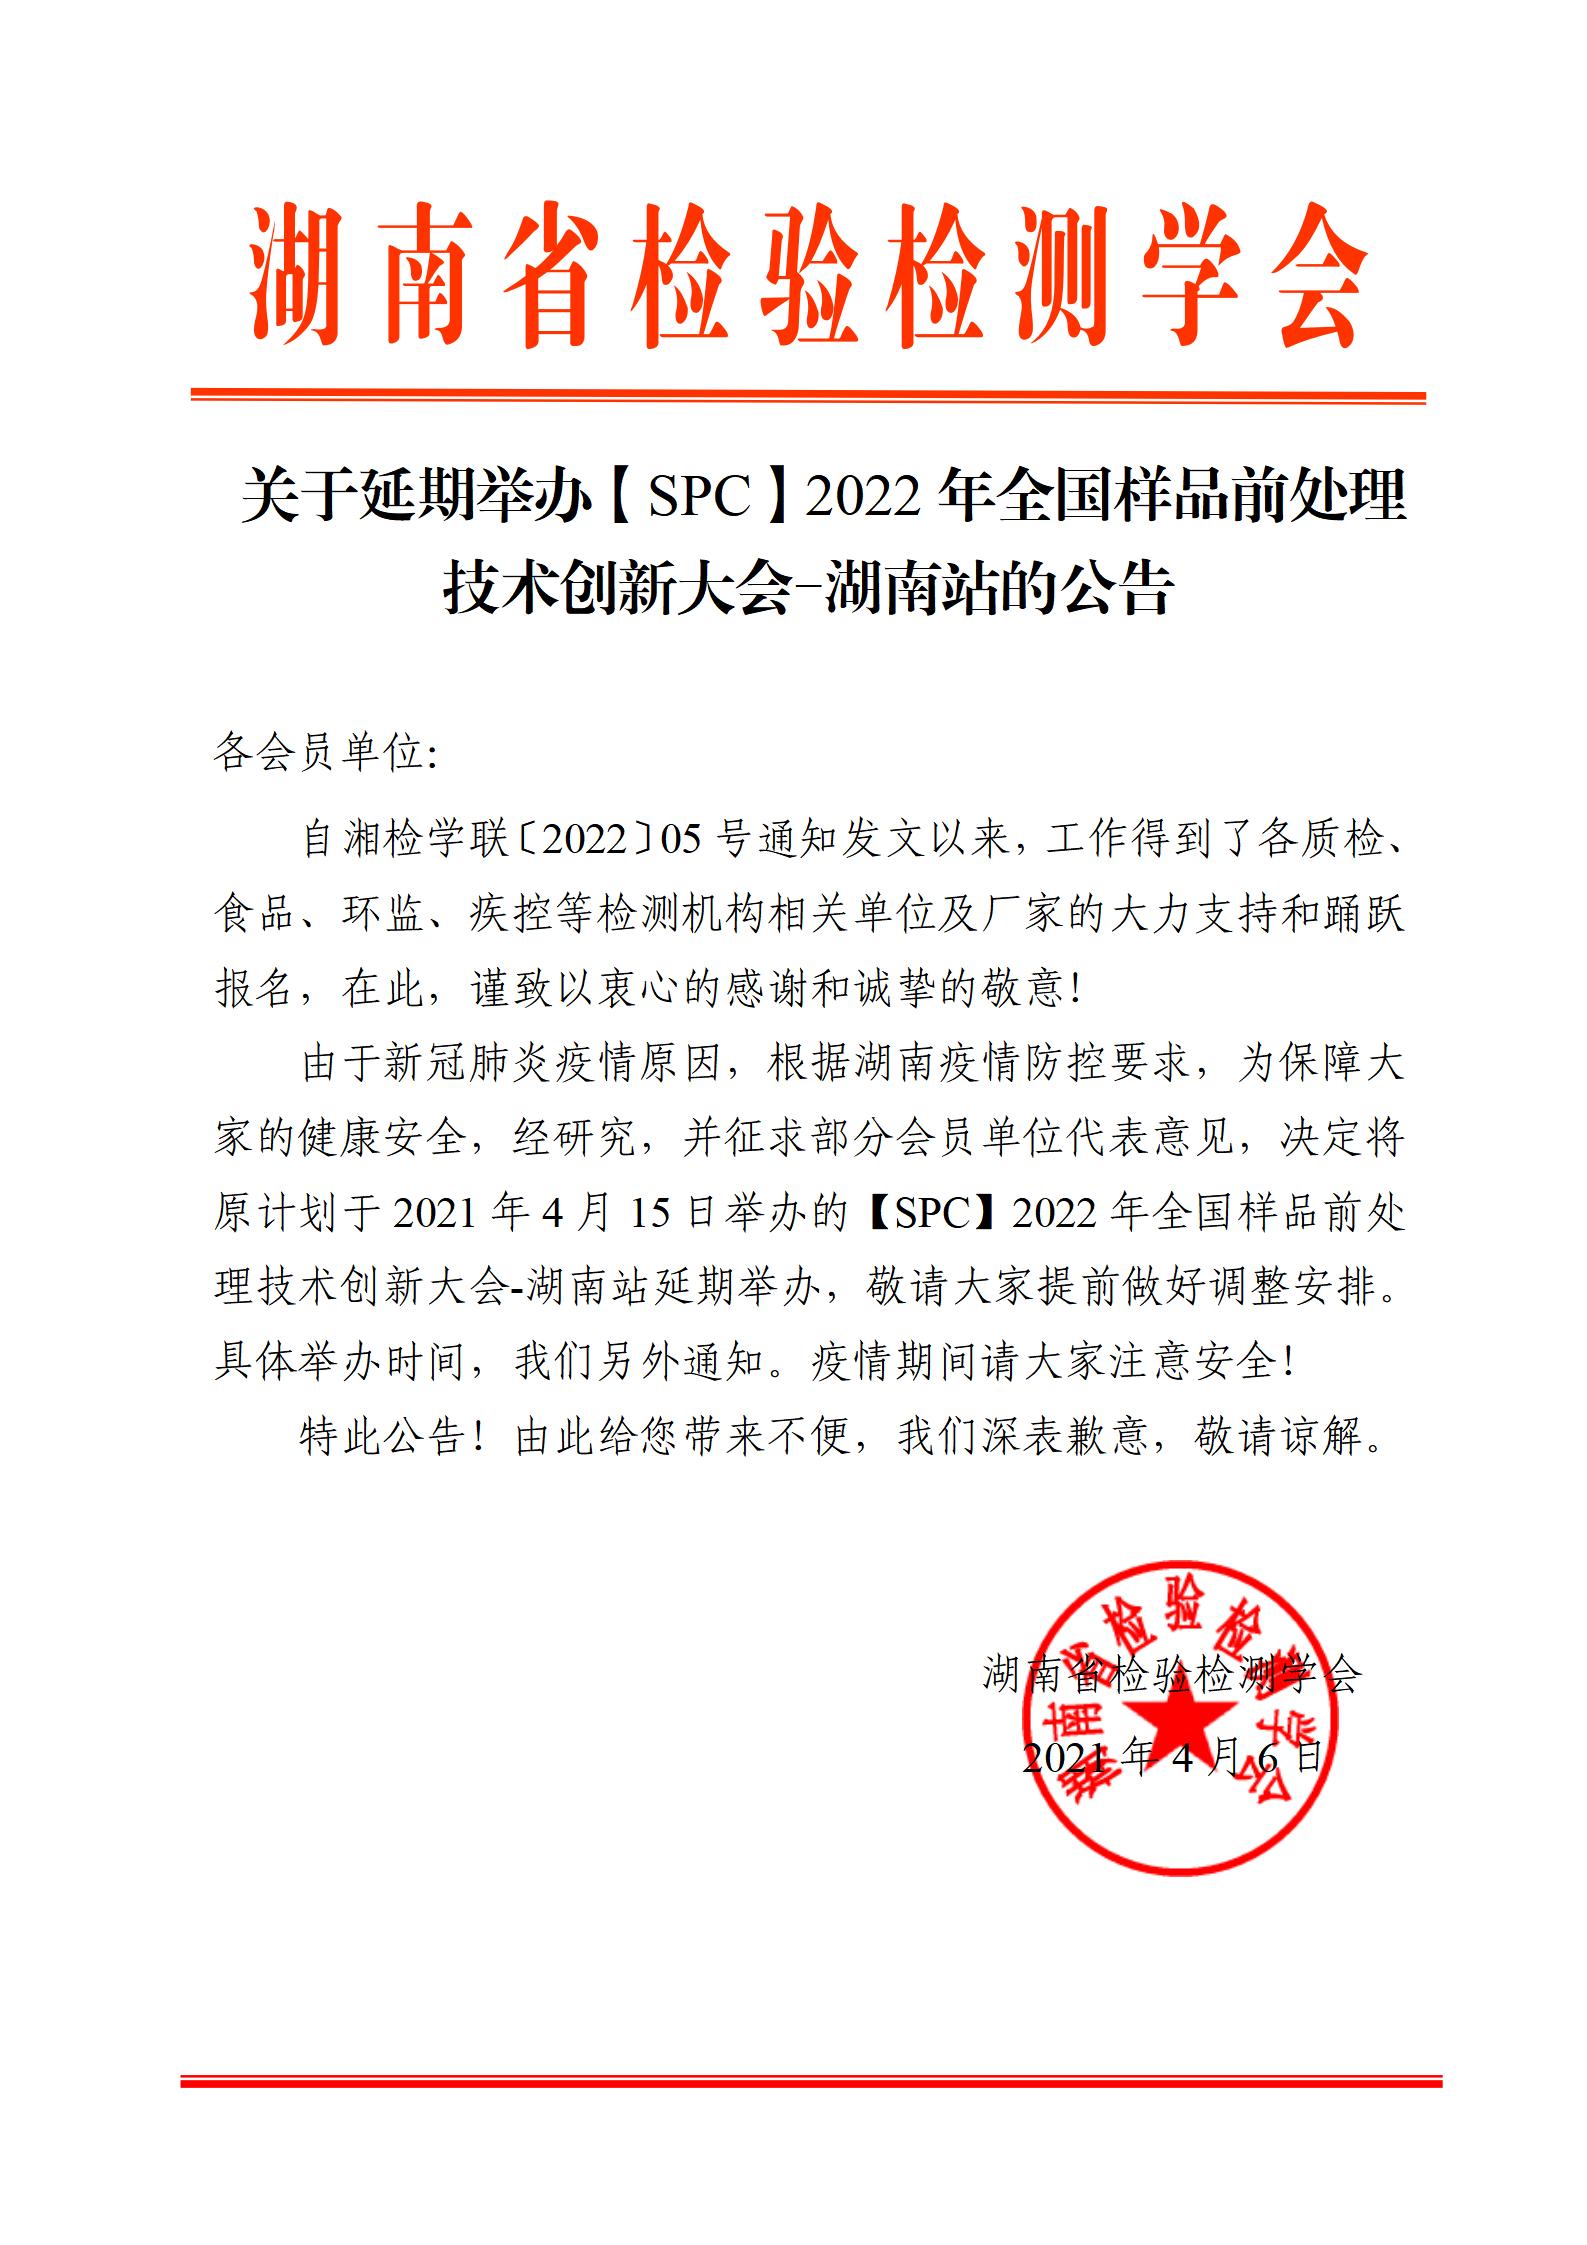 关于延期举办【SPC】2022年全国样品前处理技术创新大会-湖南站的公告_01.jpg